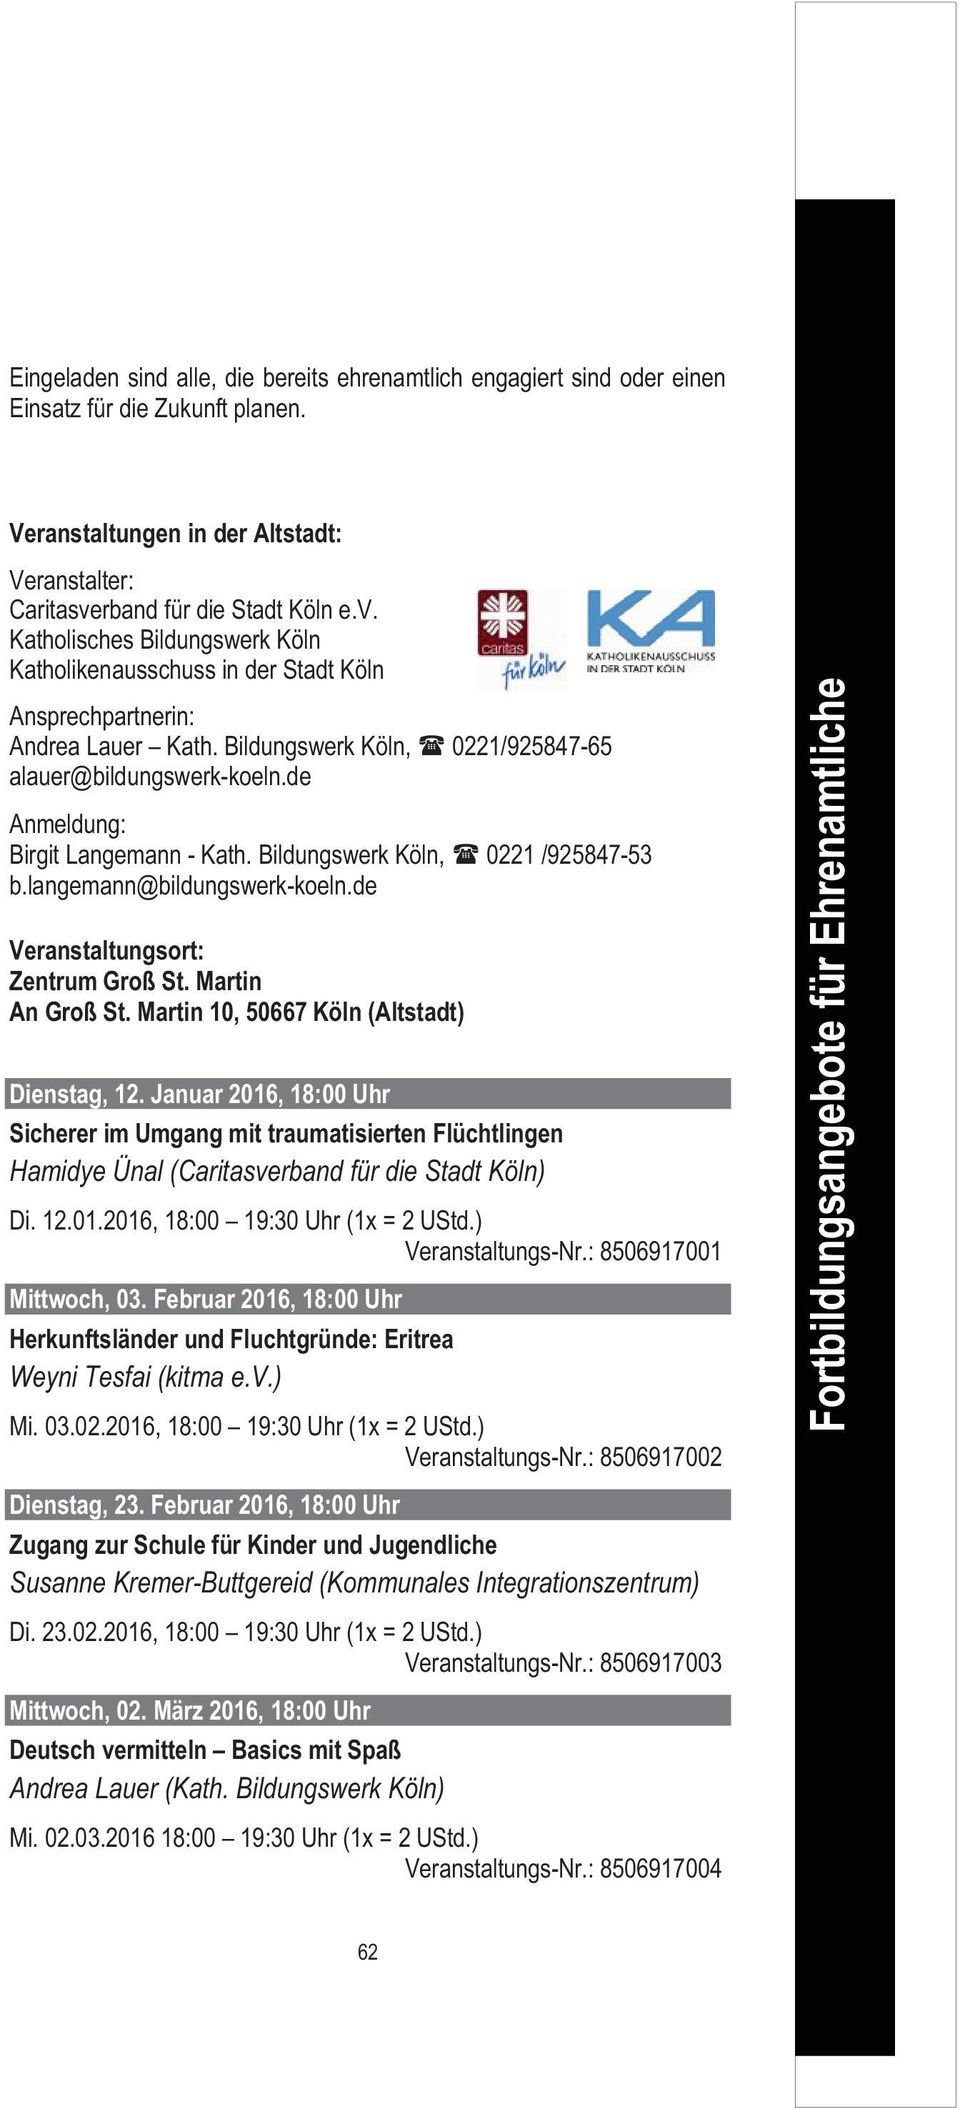 de Anmeldung: Birgit Langemann - Kath. Bildungswerk Köln, 0221 /925847-53 b.langemann@bildungswerk-koeln.de Veranstaltungsort: Zentrum Groß St. Martin An Groß St.